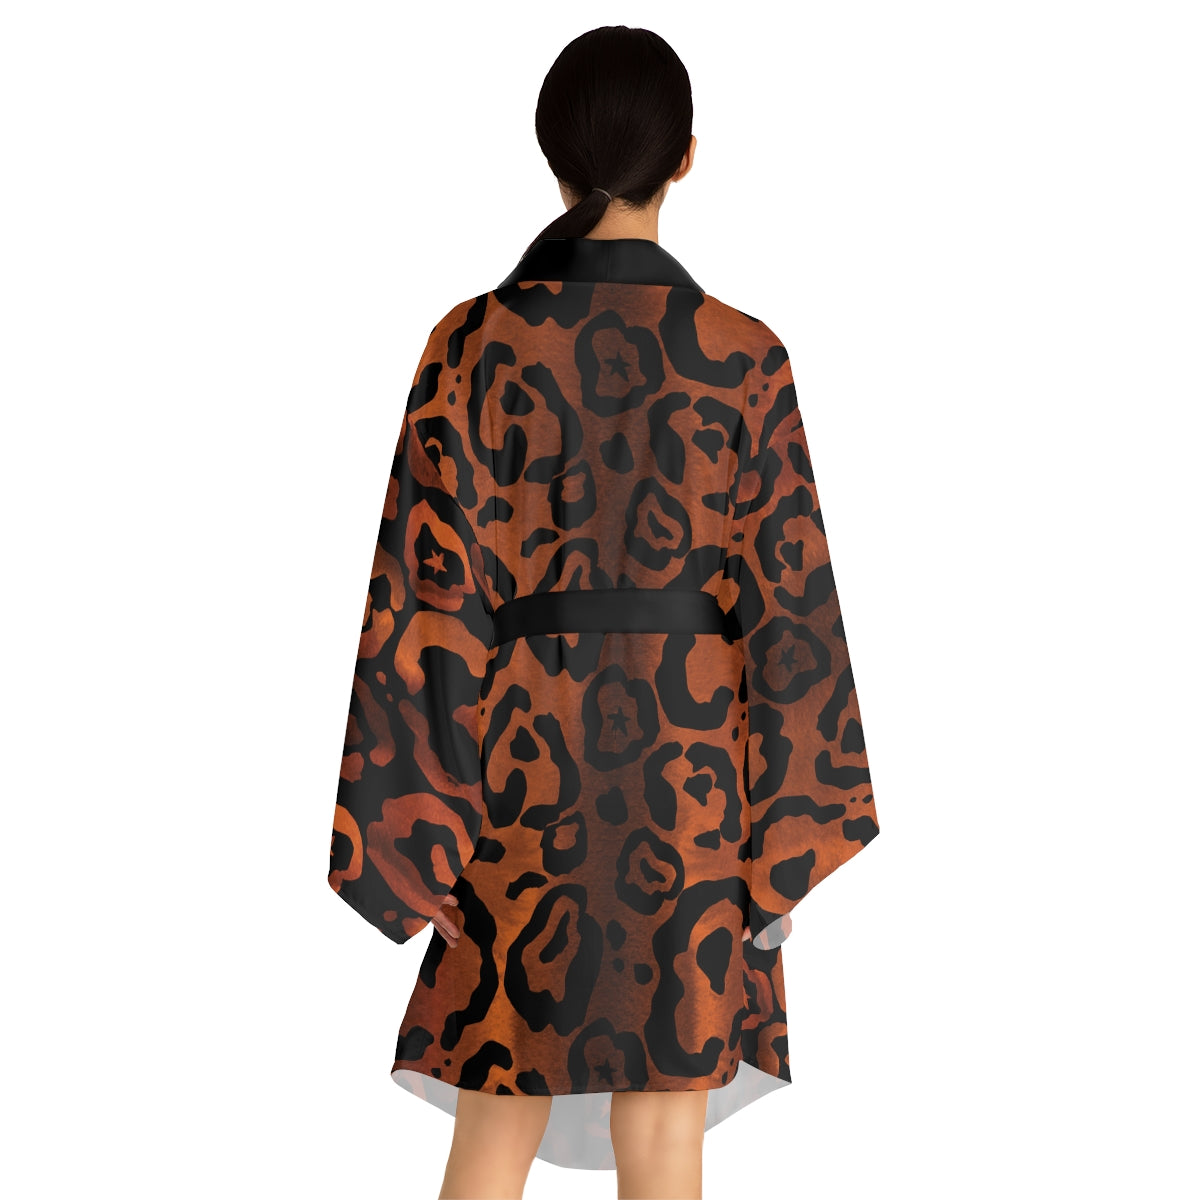 Long Sleeve Kimono Robe - Kitty 4 Life